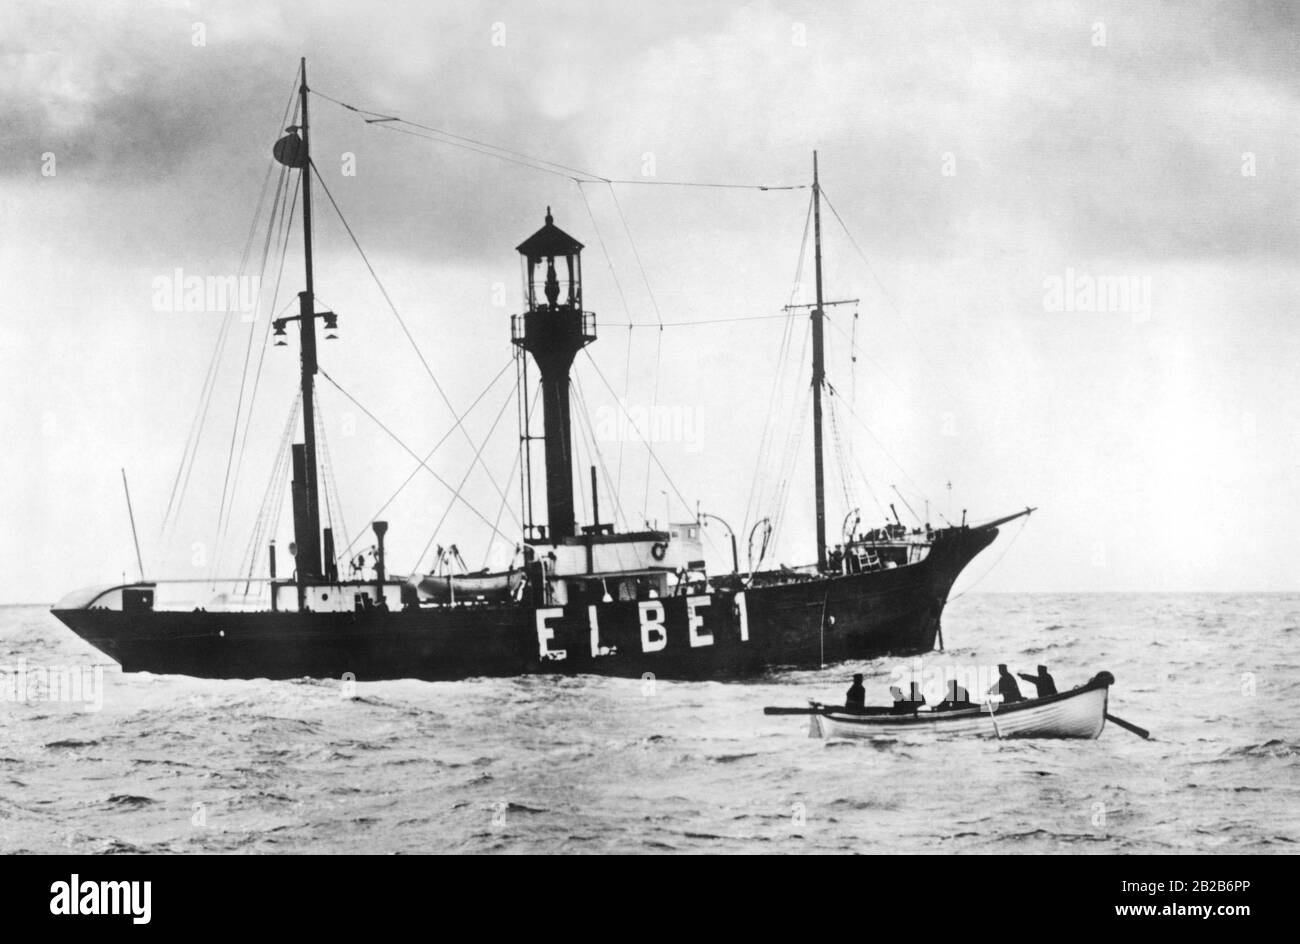 Blick auf das 1912 erbaute Feuerschiff Elbe1. Dieses Schiff sank 1936. Undatiertes Foto, ca. 1920er Jahre. Stockfoto